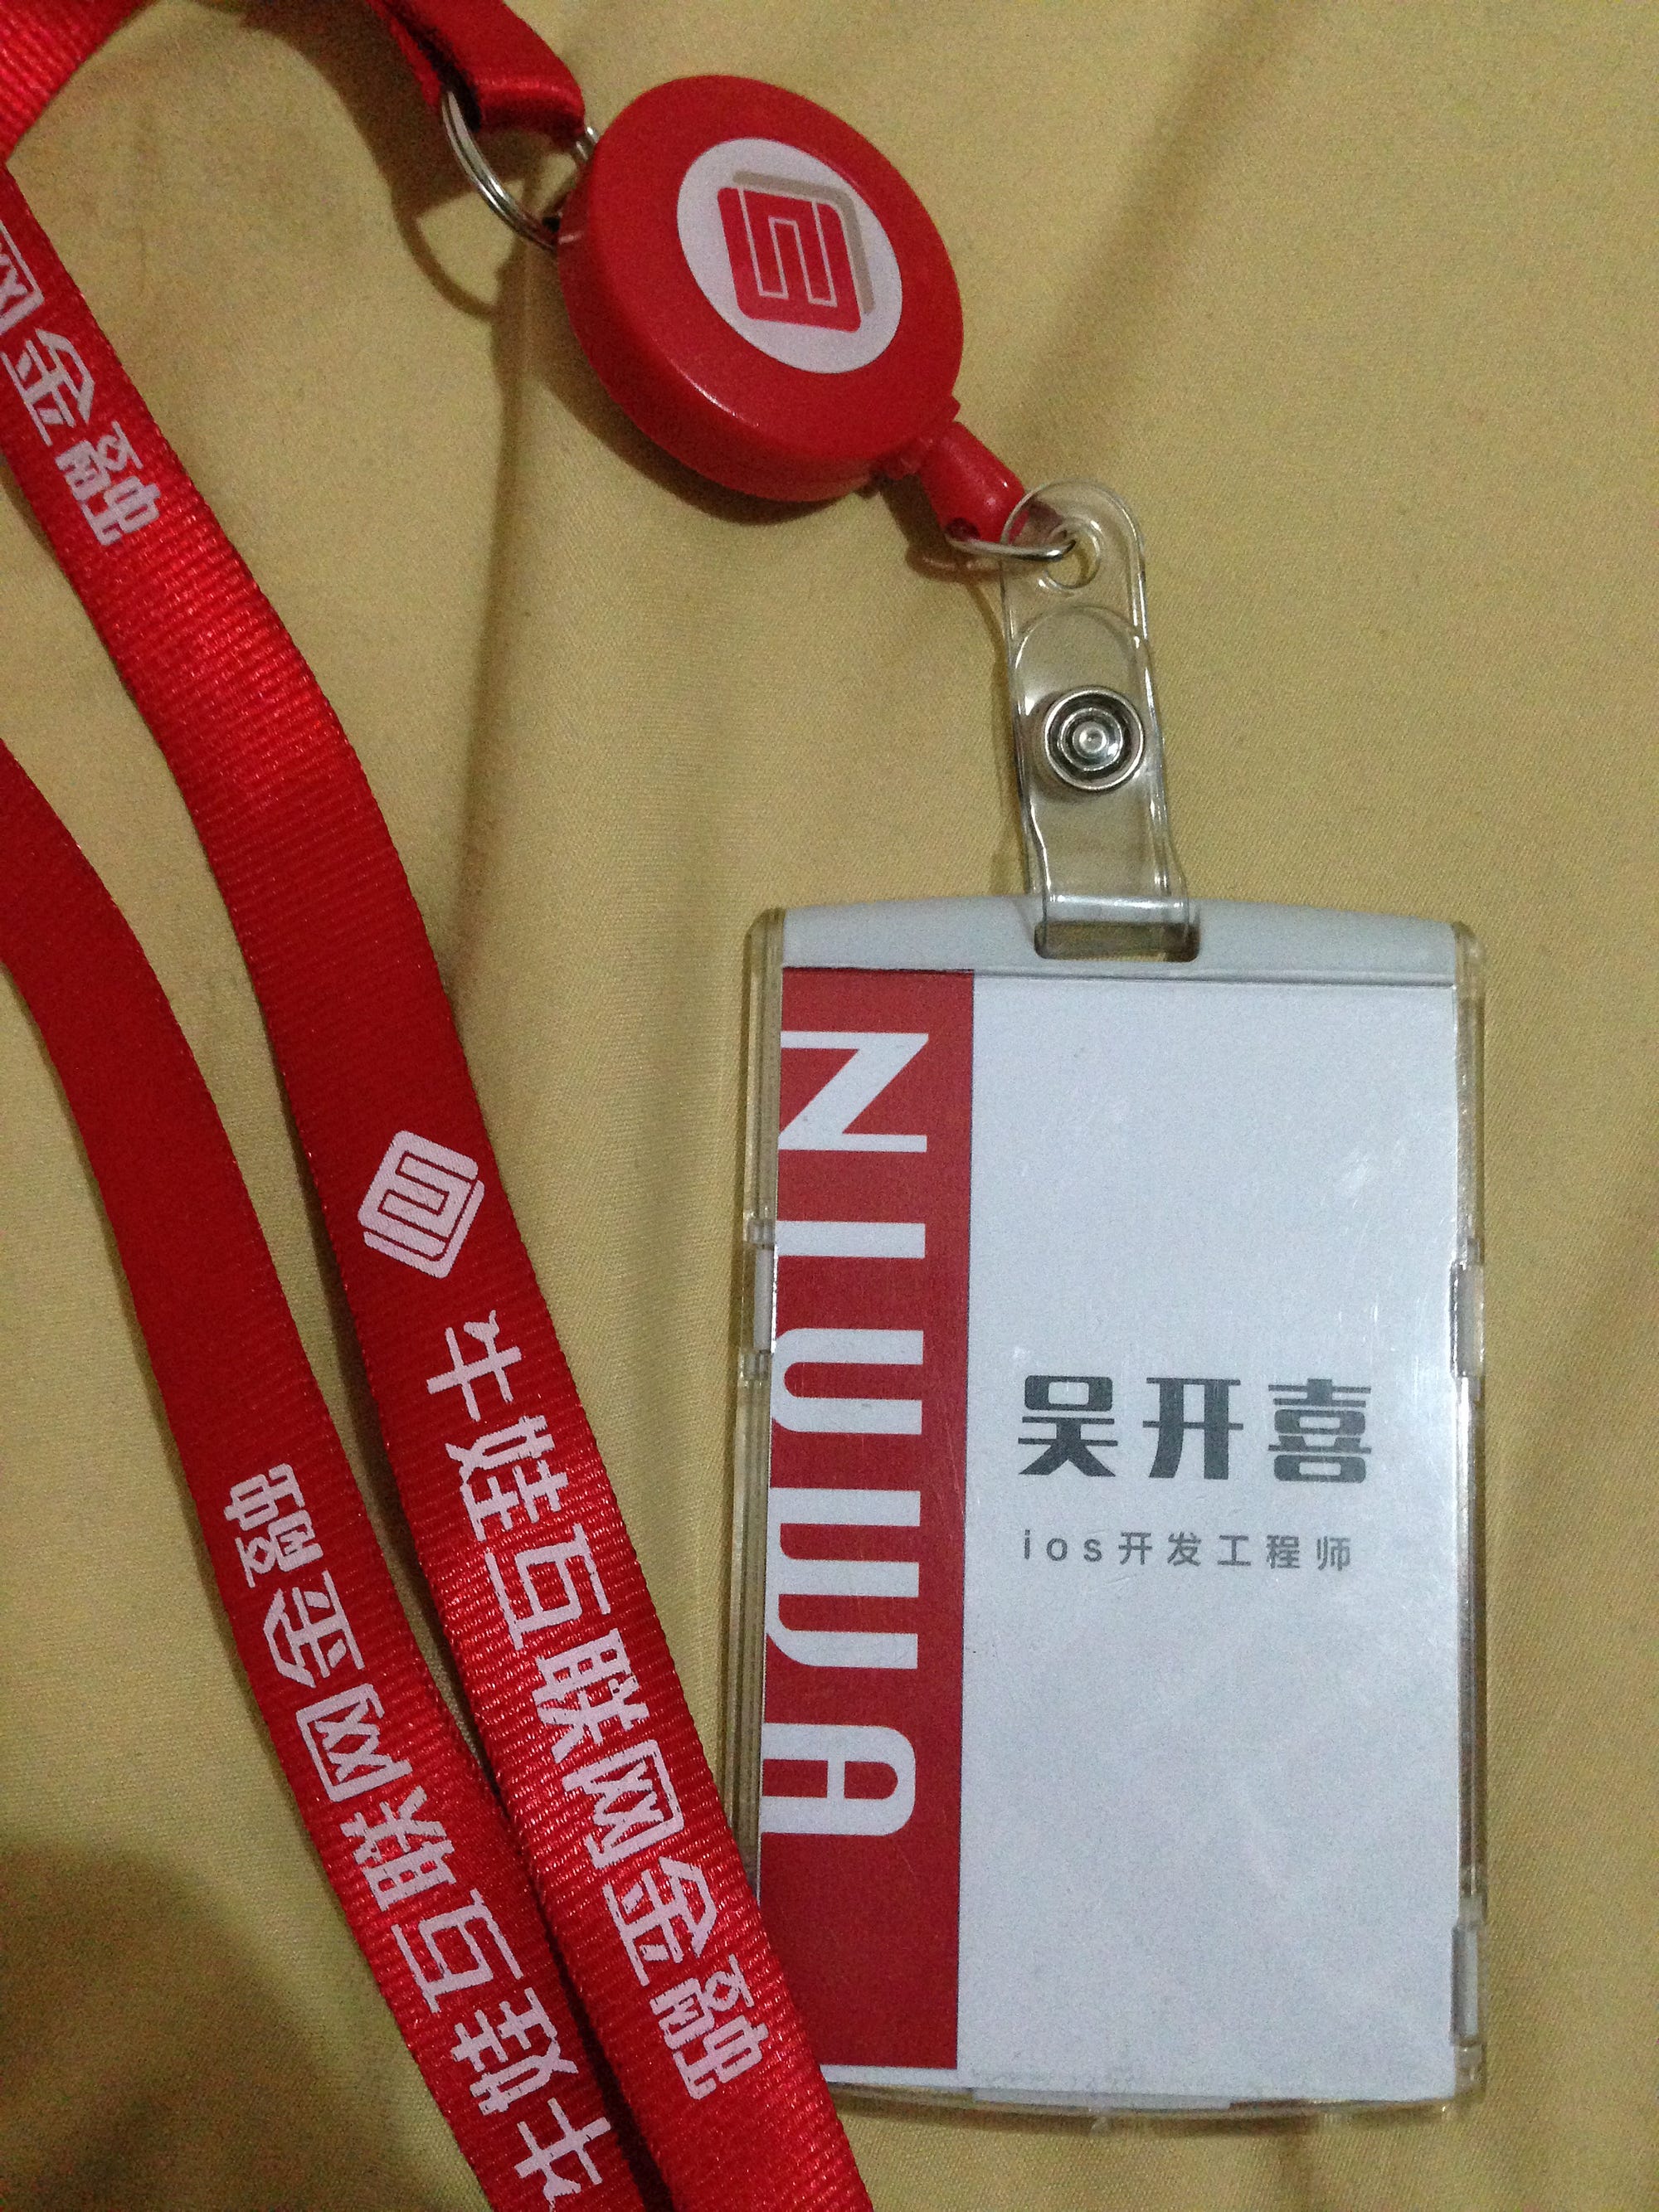 吴开喜 - My Chinese name, and iOS 开发工程师 - iOS developer engineer